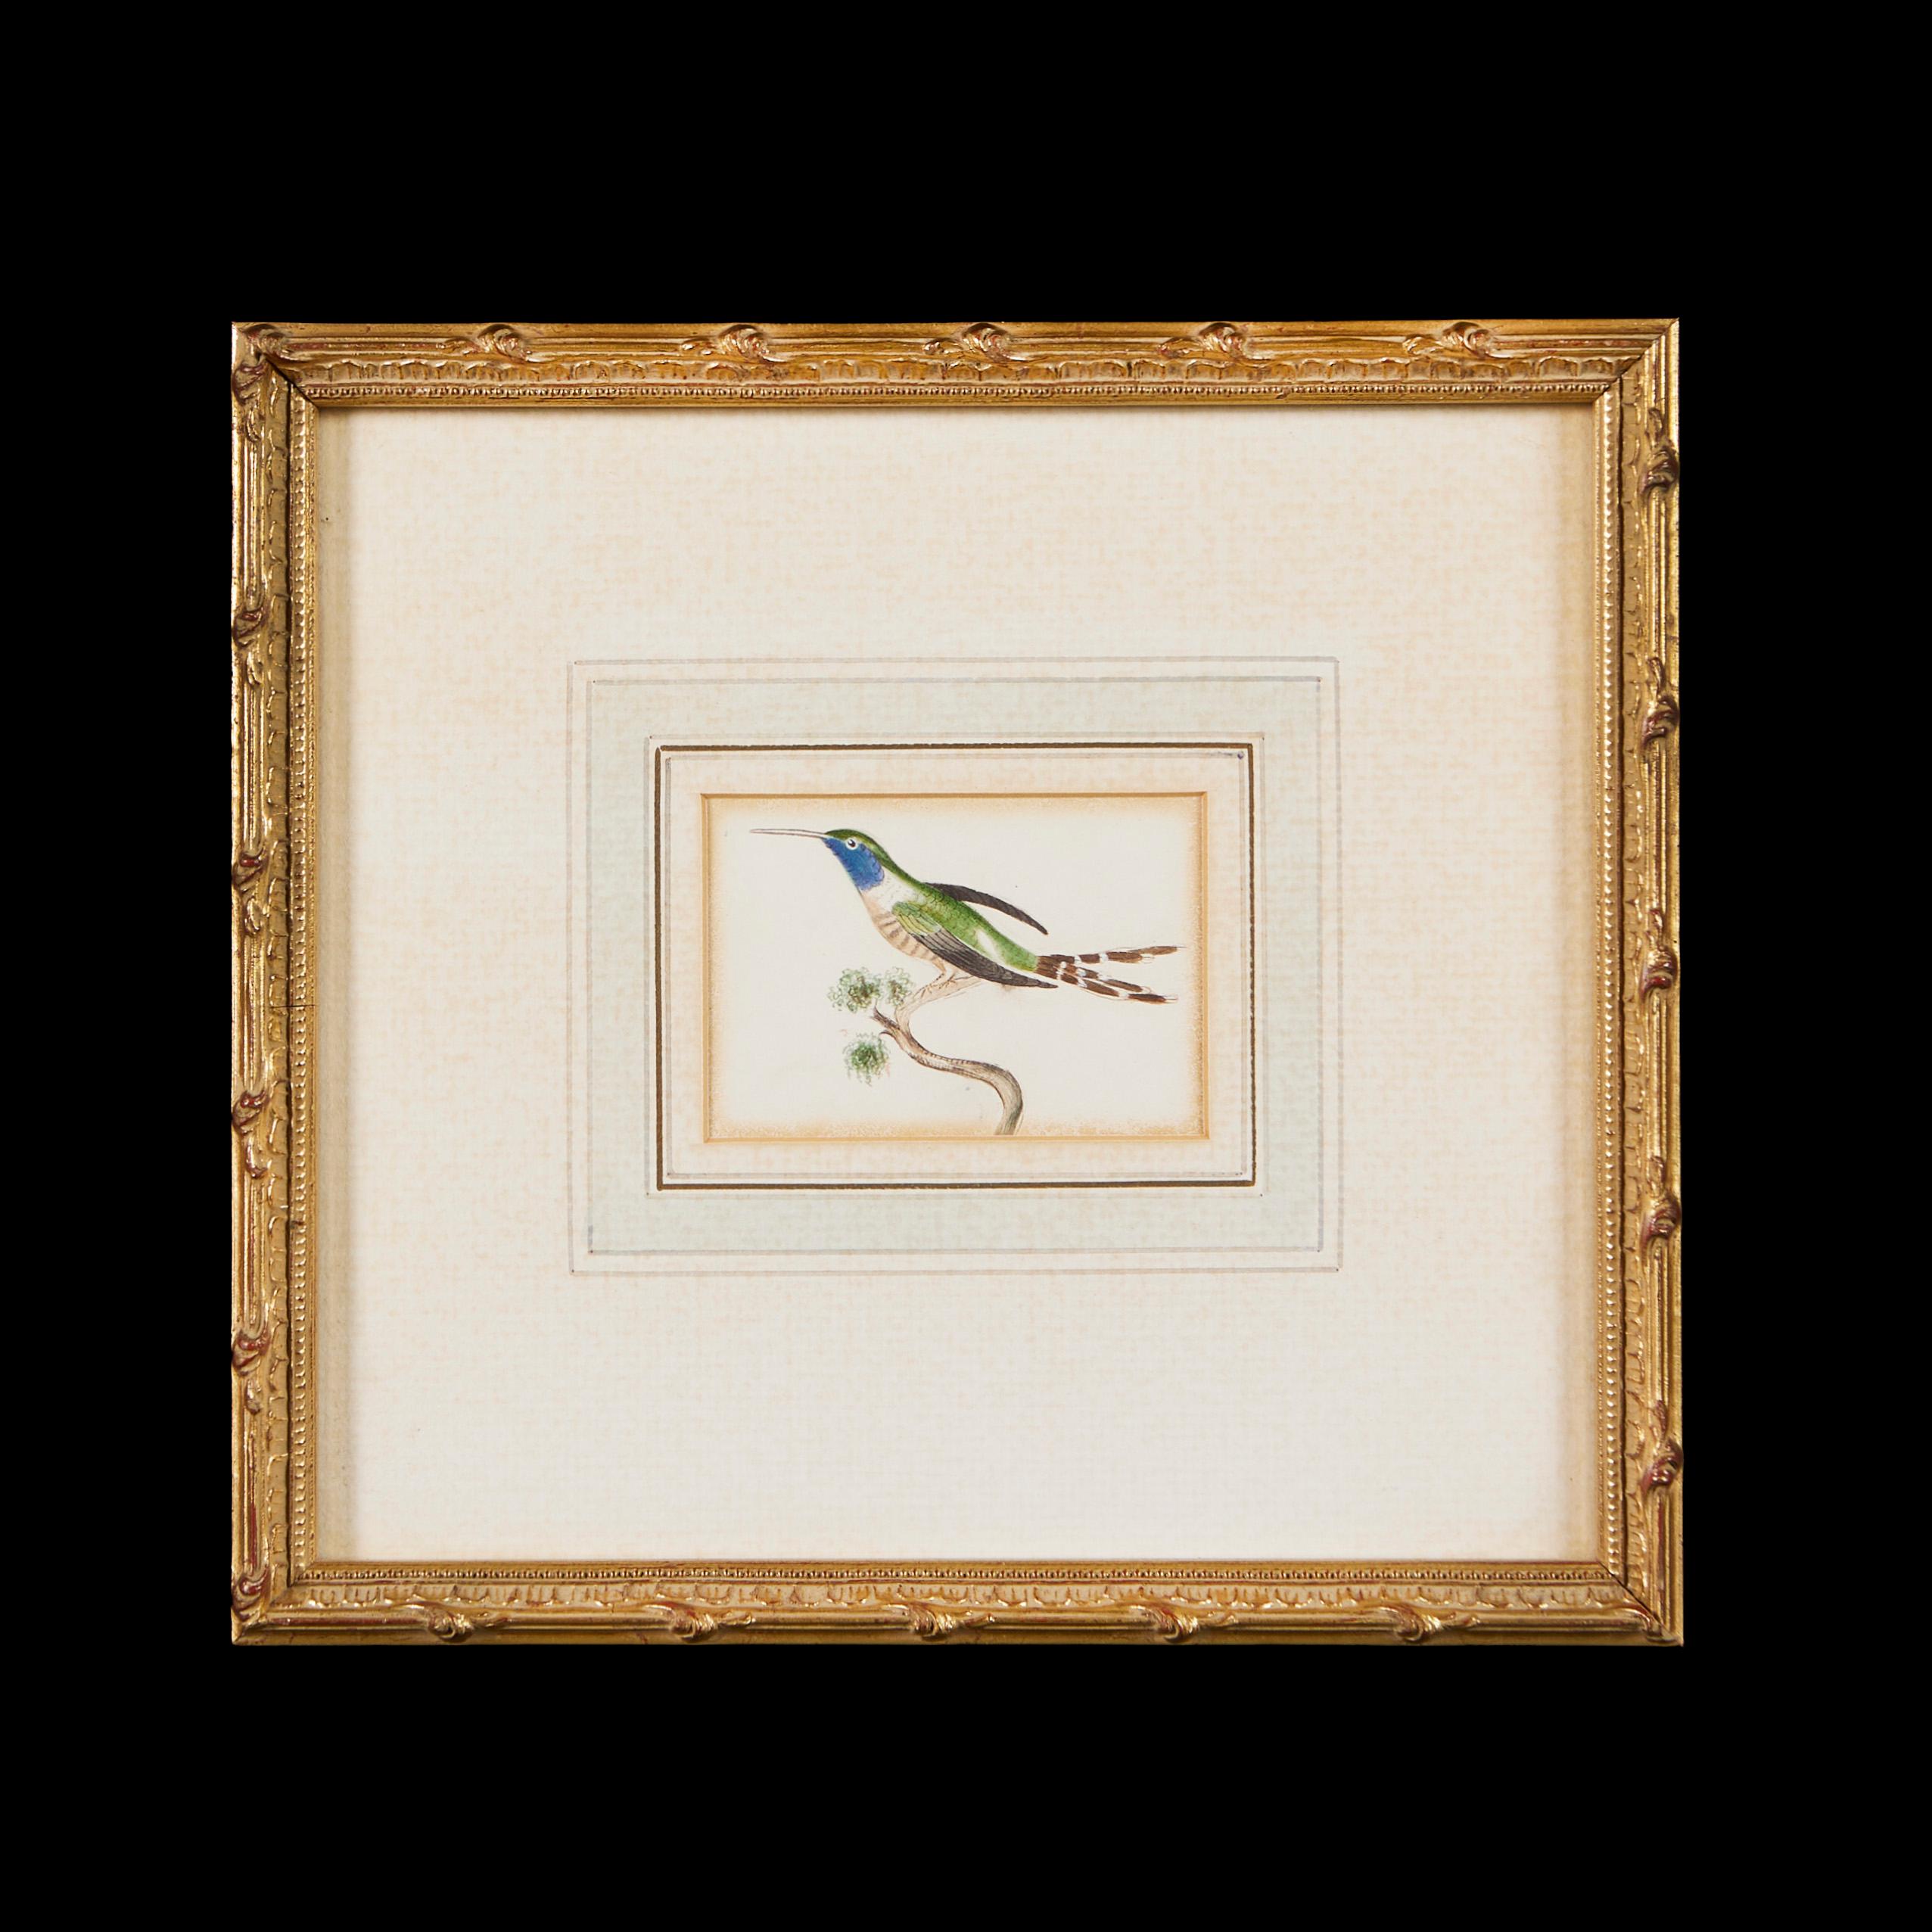 Angleterre, vers 1834

Deux belles aquarelles du XIXe siècle d'oiseaux exotiques tirées d'un carnet de croquis appartenant à la famille Molyneux d'Isfield, exécutées sur du papier Whatman filigrané en 1834 et montées dans des cadres en bois doré.